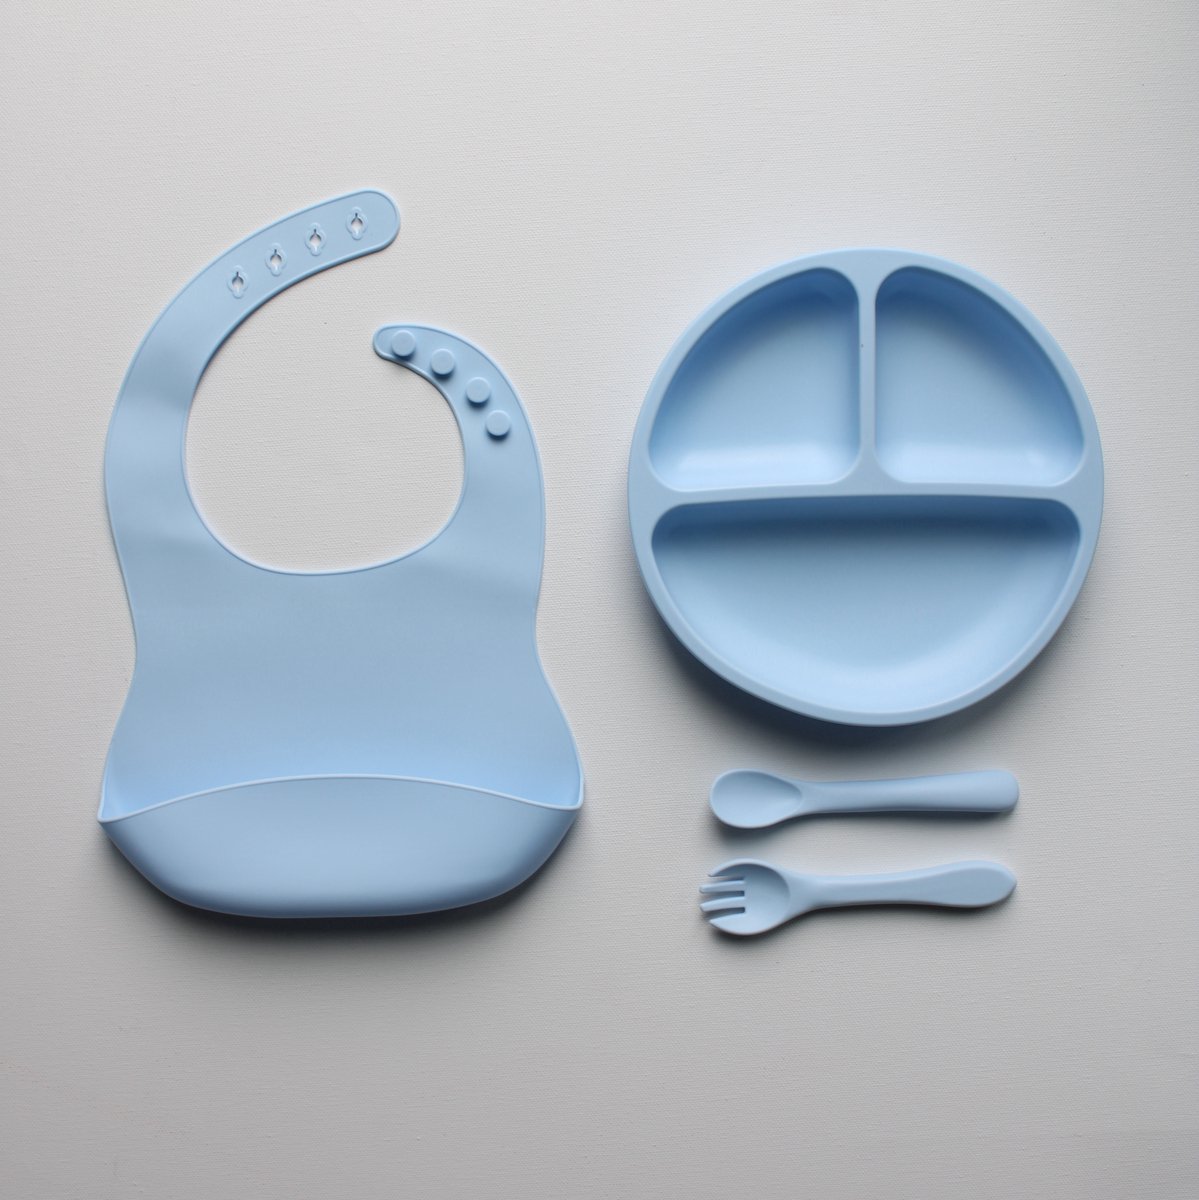 4Beebies 4 delige Baby servies set inc. slabbetje - 100% Siliconen - Kinderservies - BPA vrij - Antislip - Magnetron en Vaatwasserbestendig - Makkelijk schoonmaken - Blauw